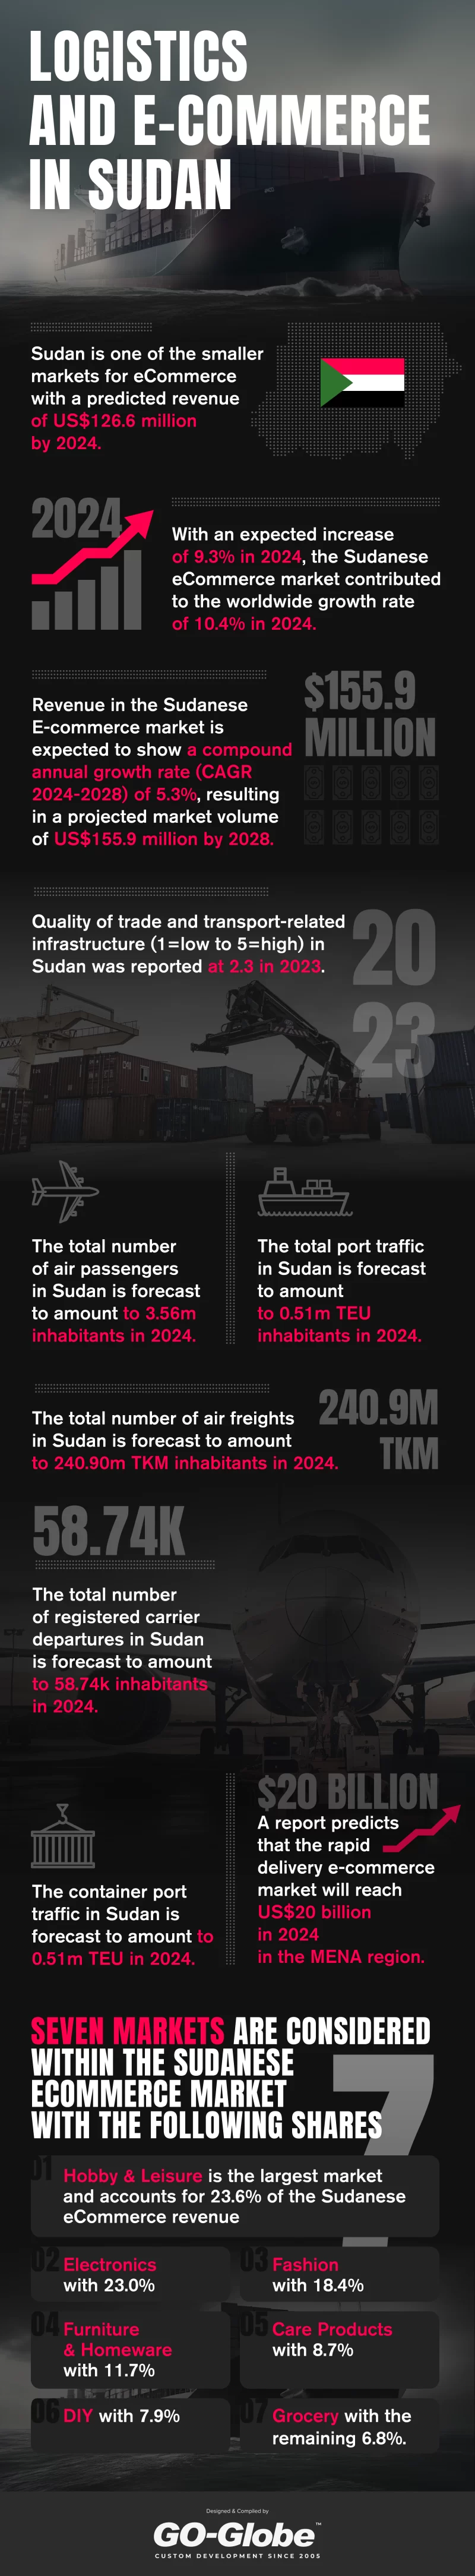 Logistics and E-Commerce in Sudan